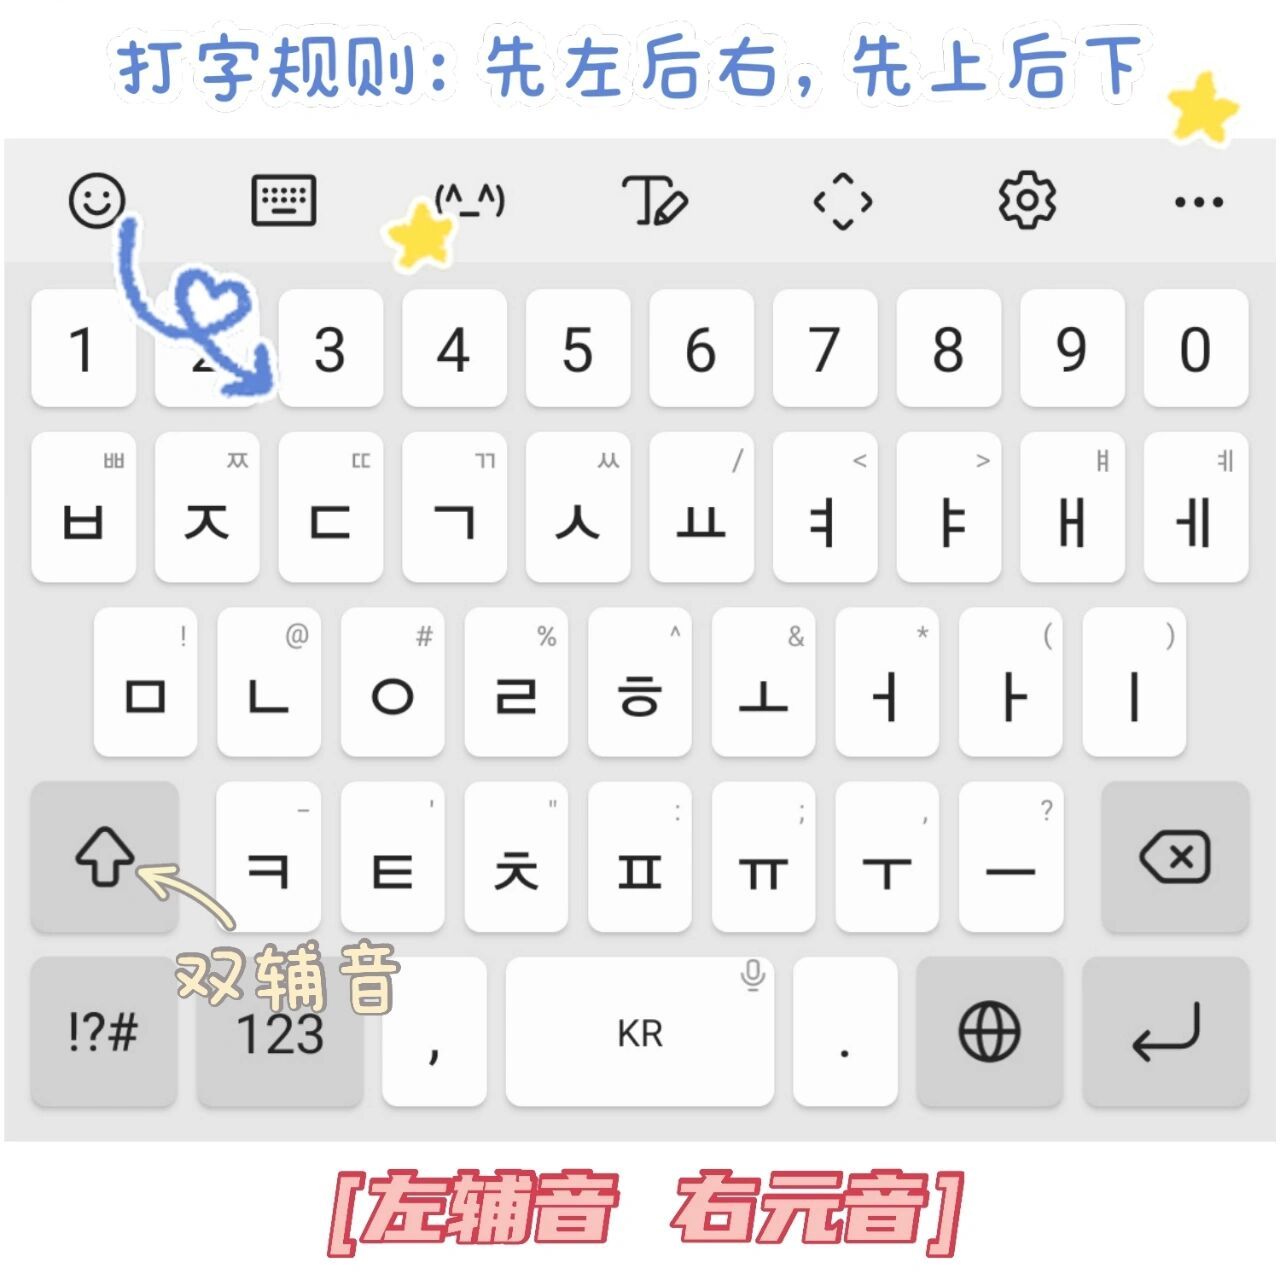 9693韩语键盘使用方法分享 学韩语怎么能不会用韩语键盘呀!